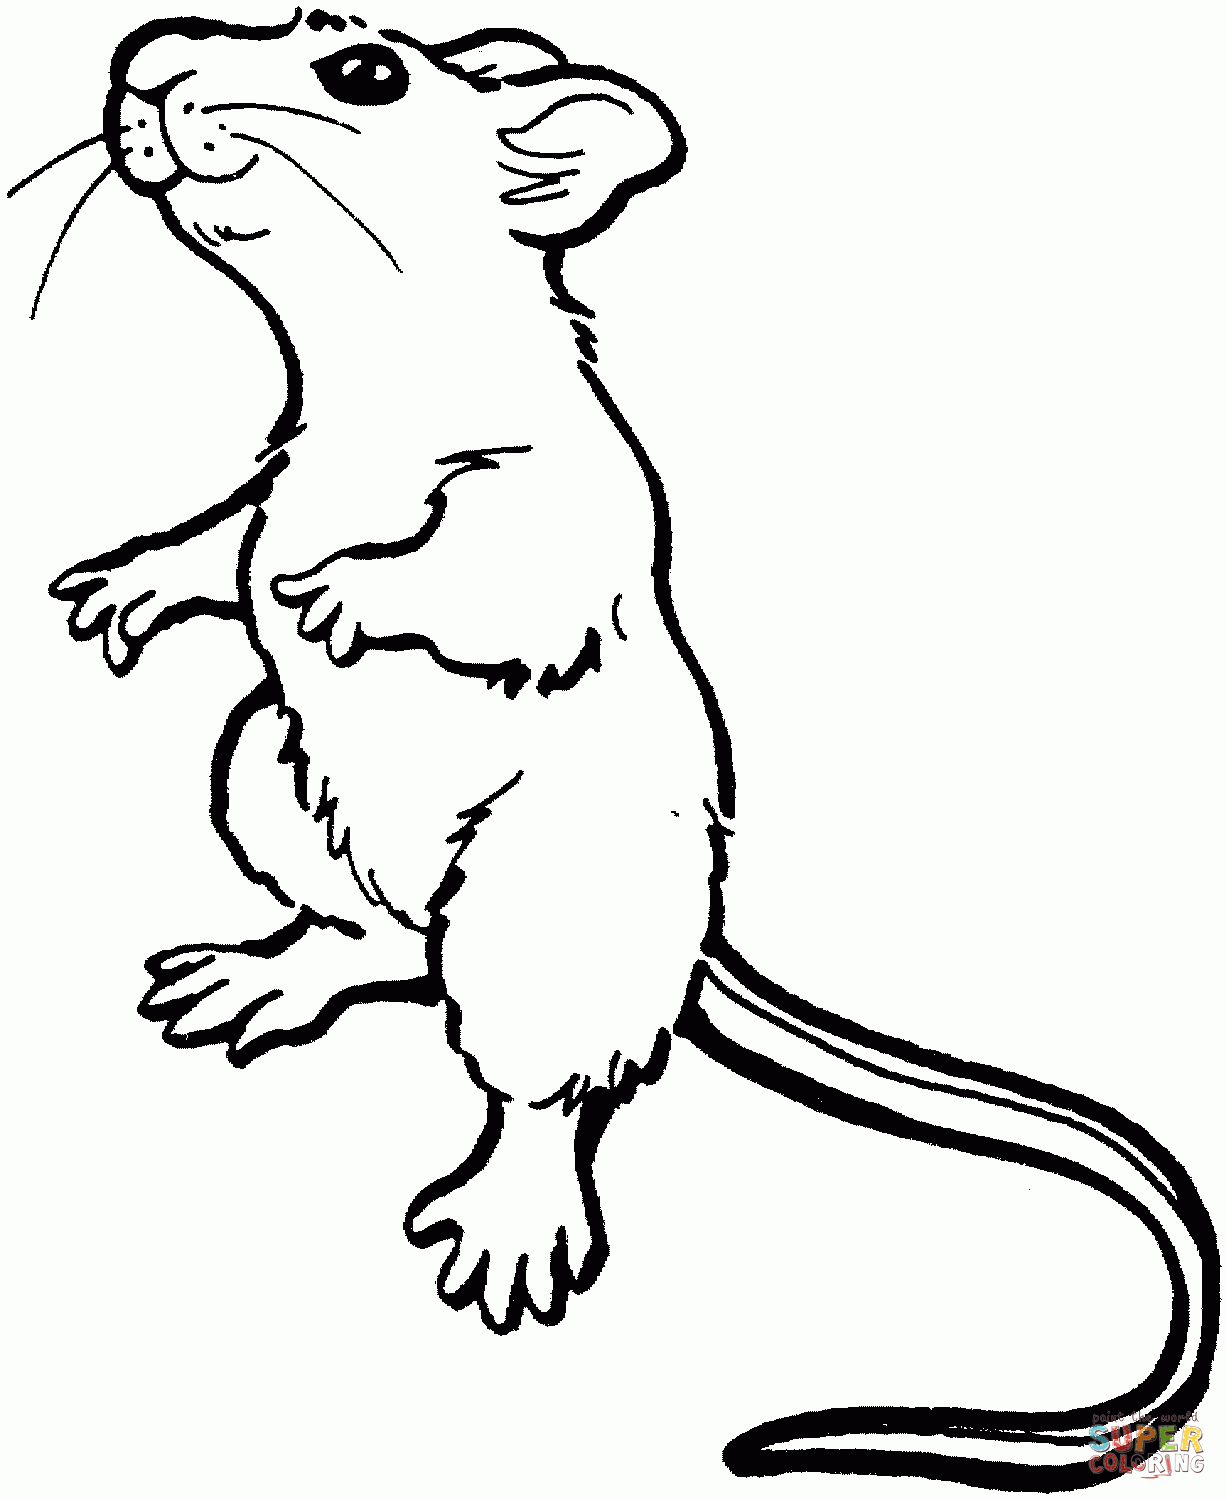 Ausmalbilder Mäuse - Malvorlagen Kostenlos Zum Ausdrucken über Maus Zum Ausmalen